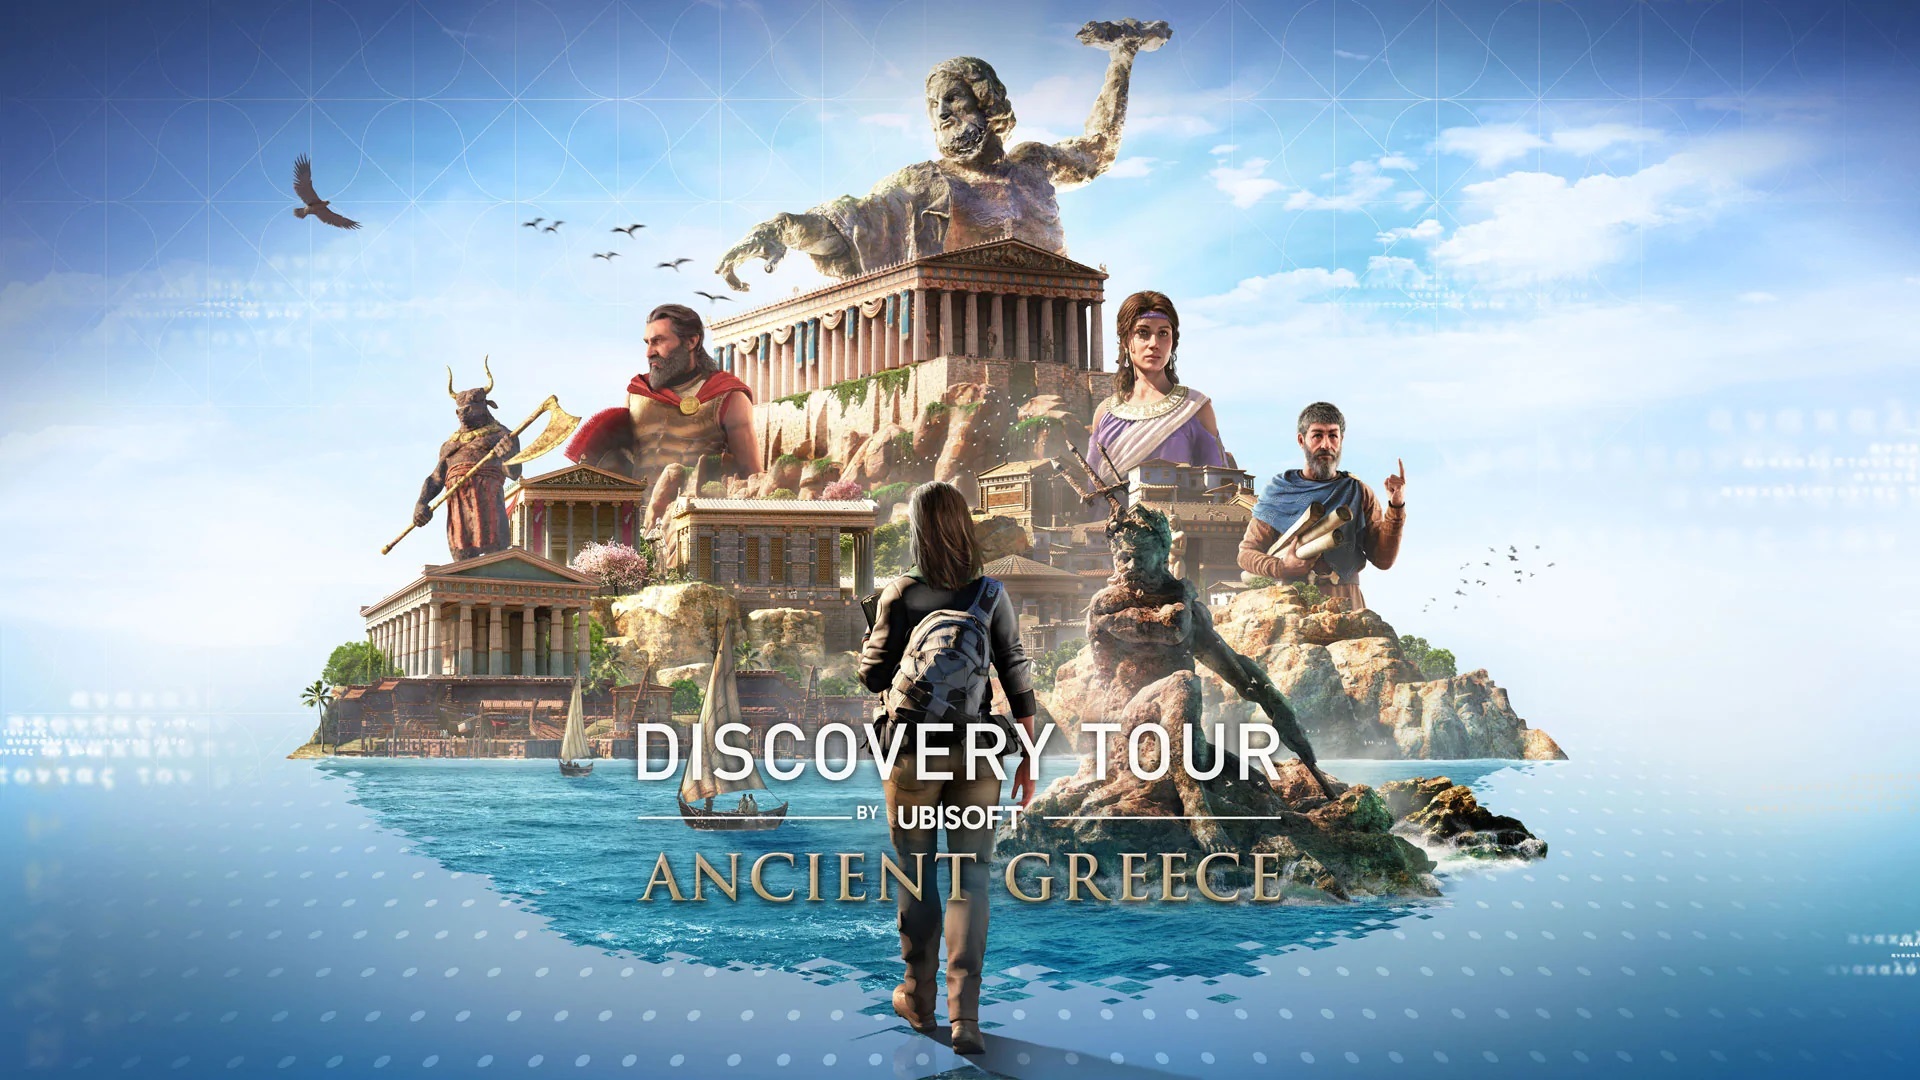 Assassin's Creed Odyssey - Discovery Tour: Yunani Kuno sekarang tersedia di PC, PS4 dan XB1; Peluncuran Trailer